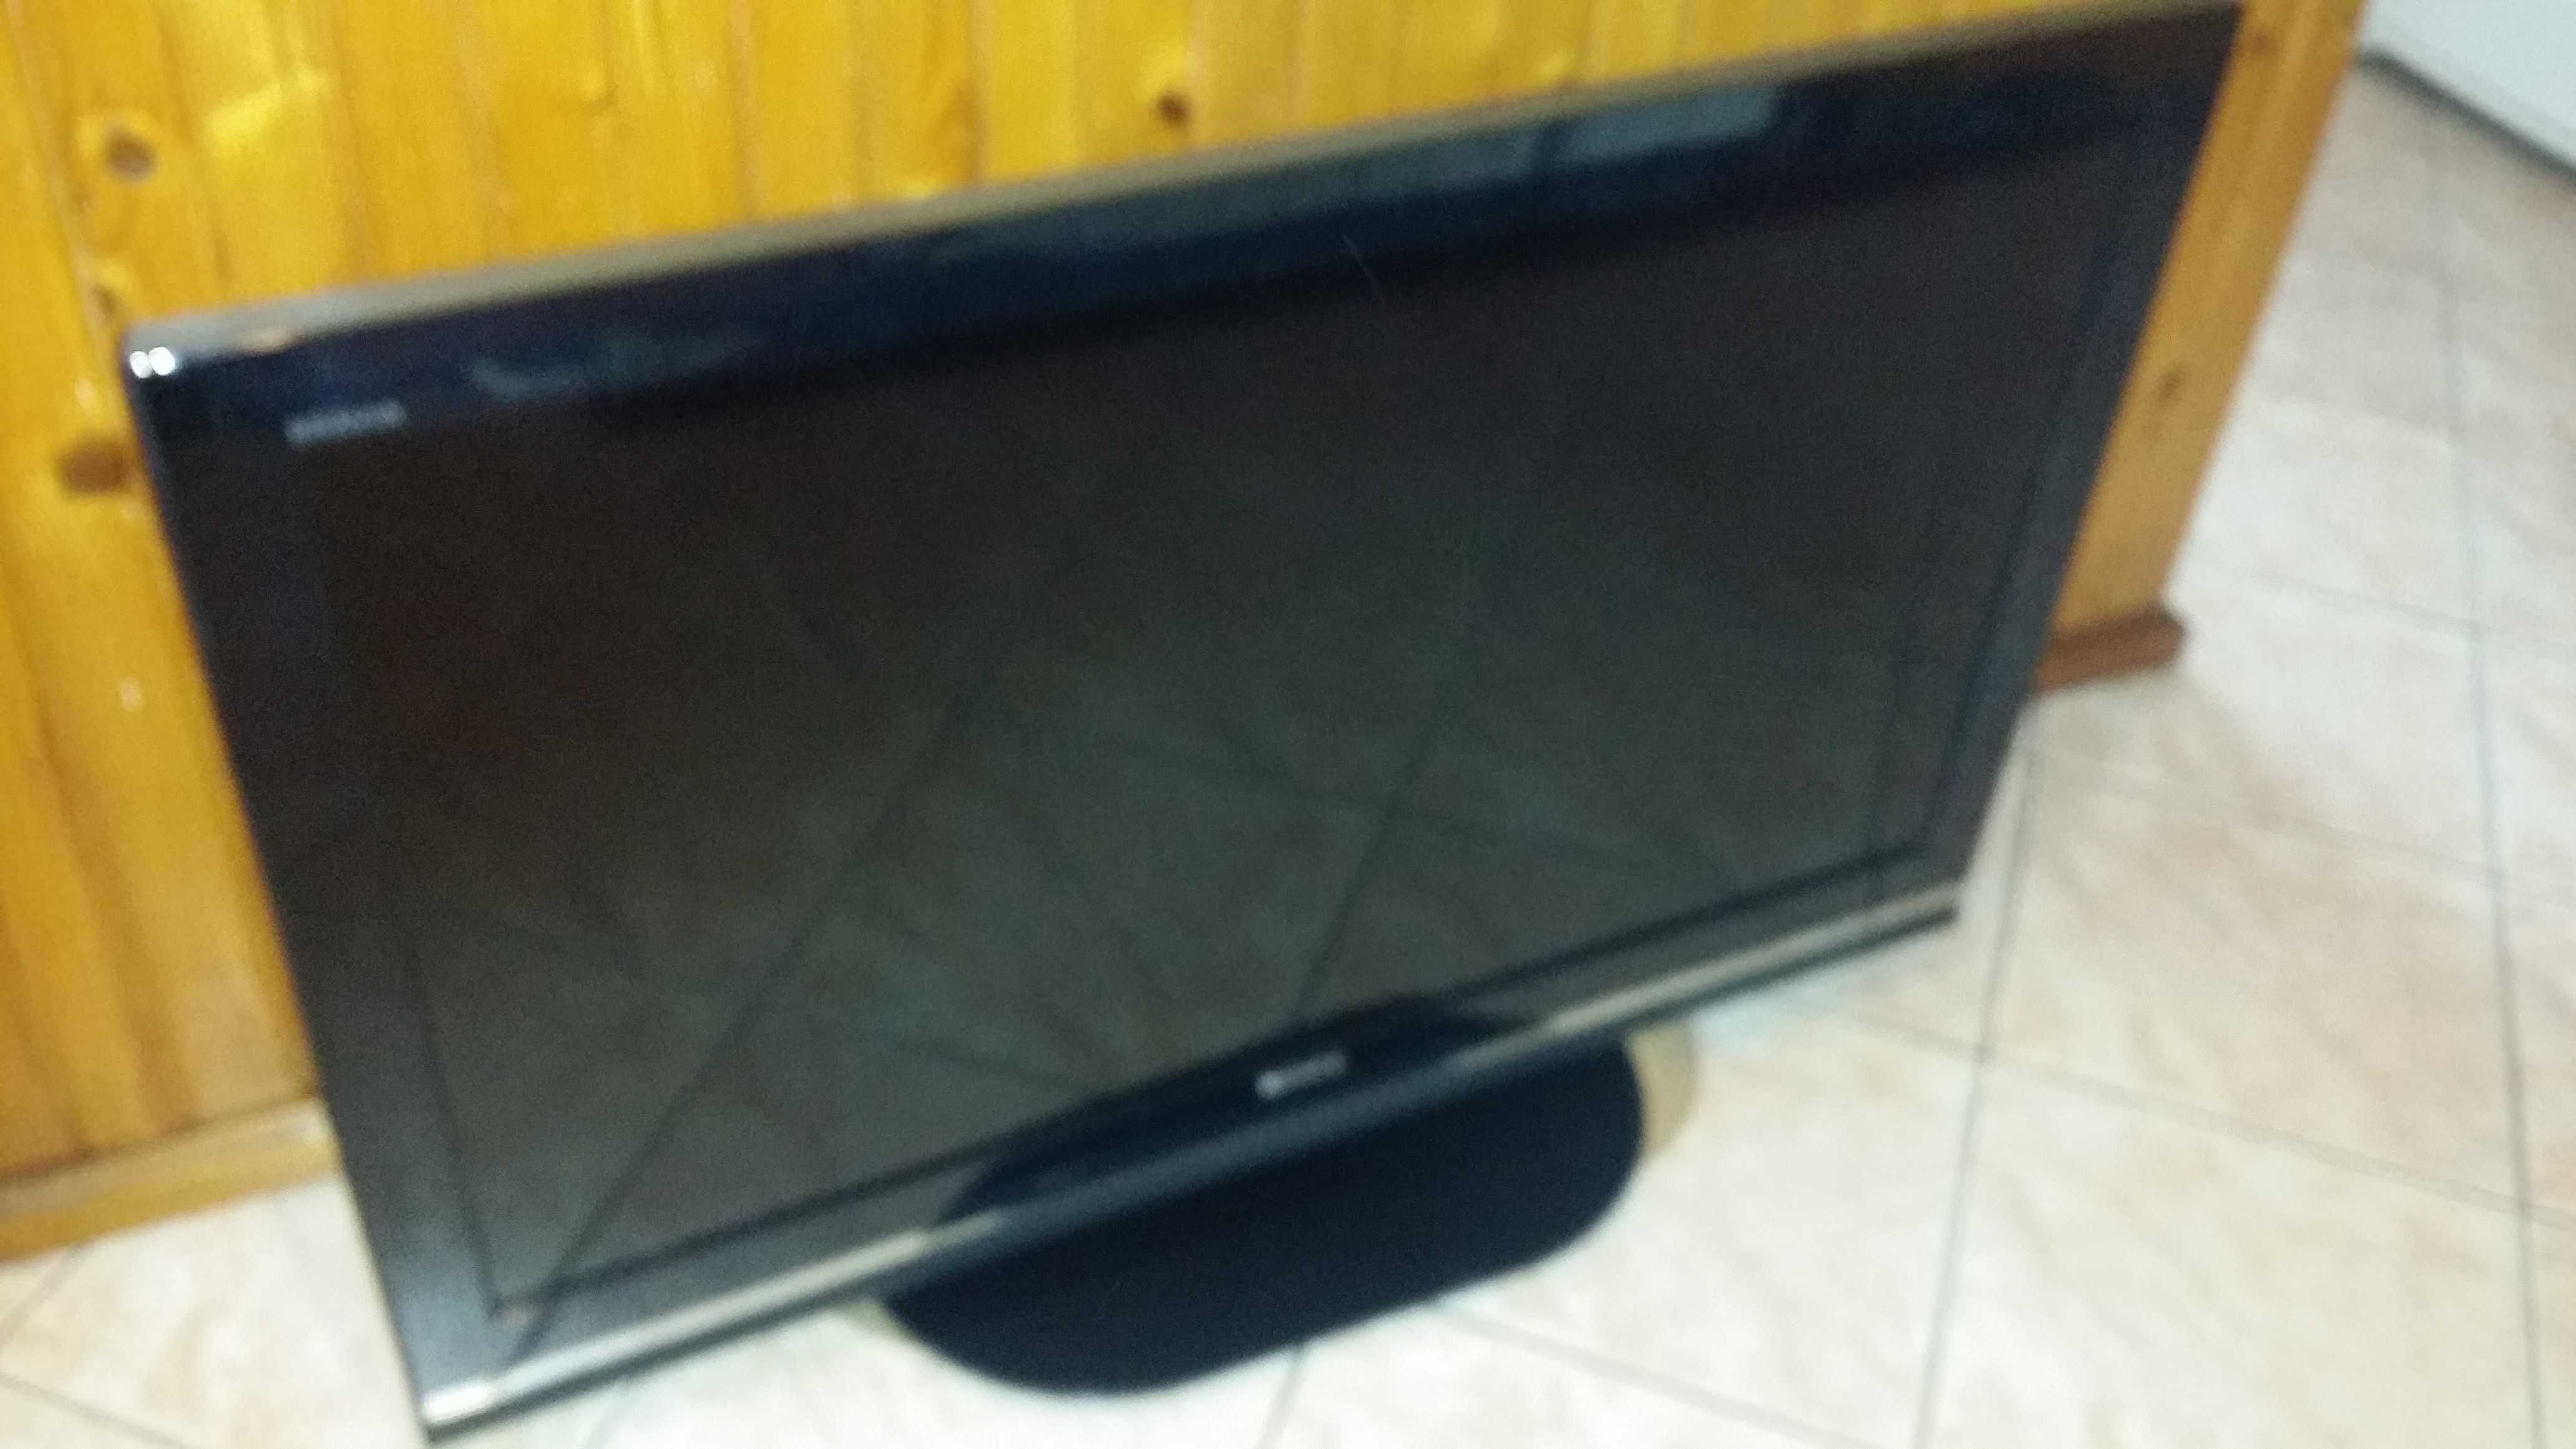 telewizor Sony model KDL 40W5740 - 40 cali idealny na działkę LCD